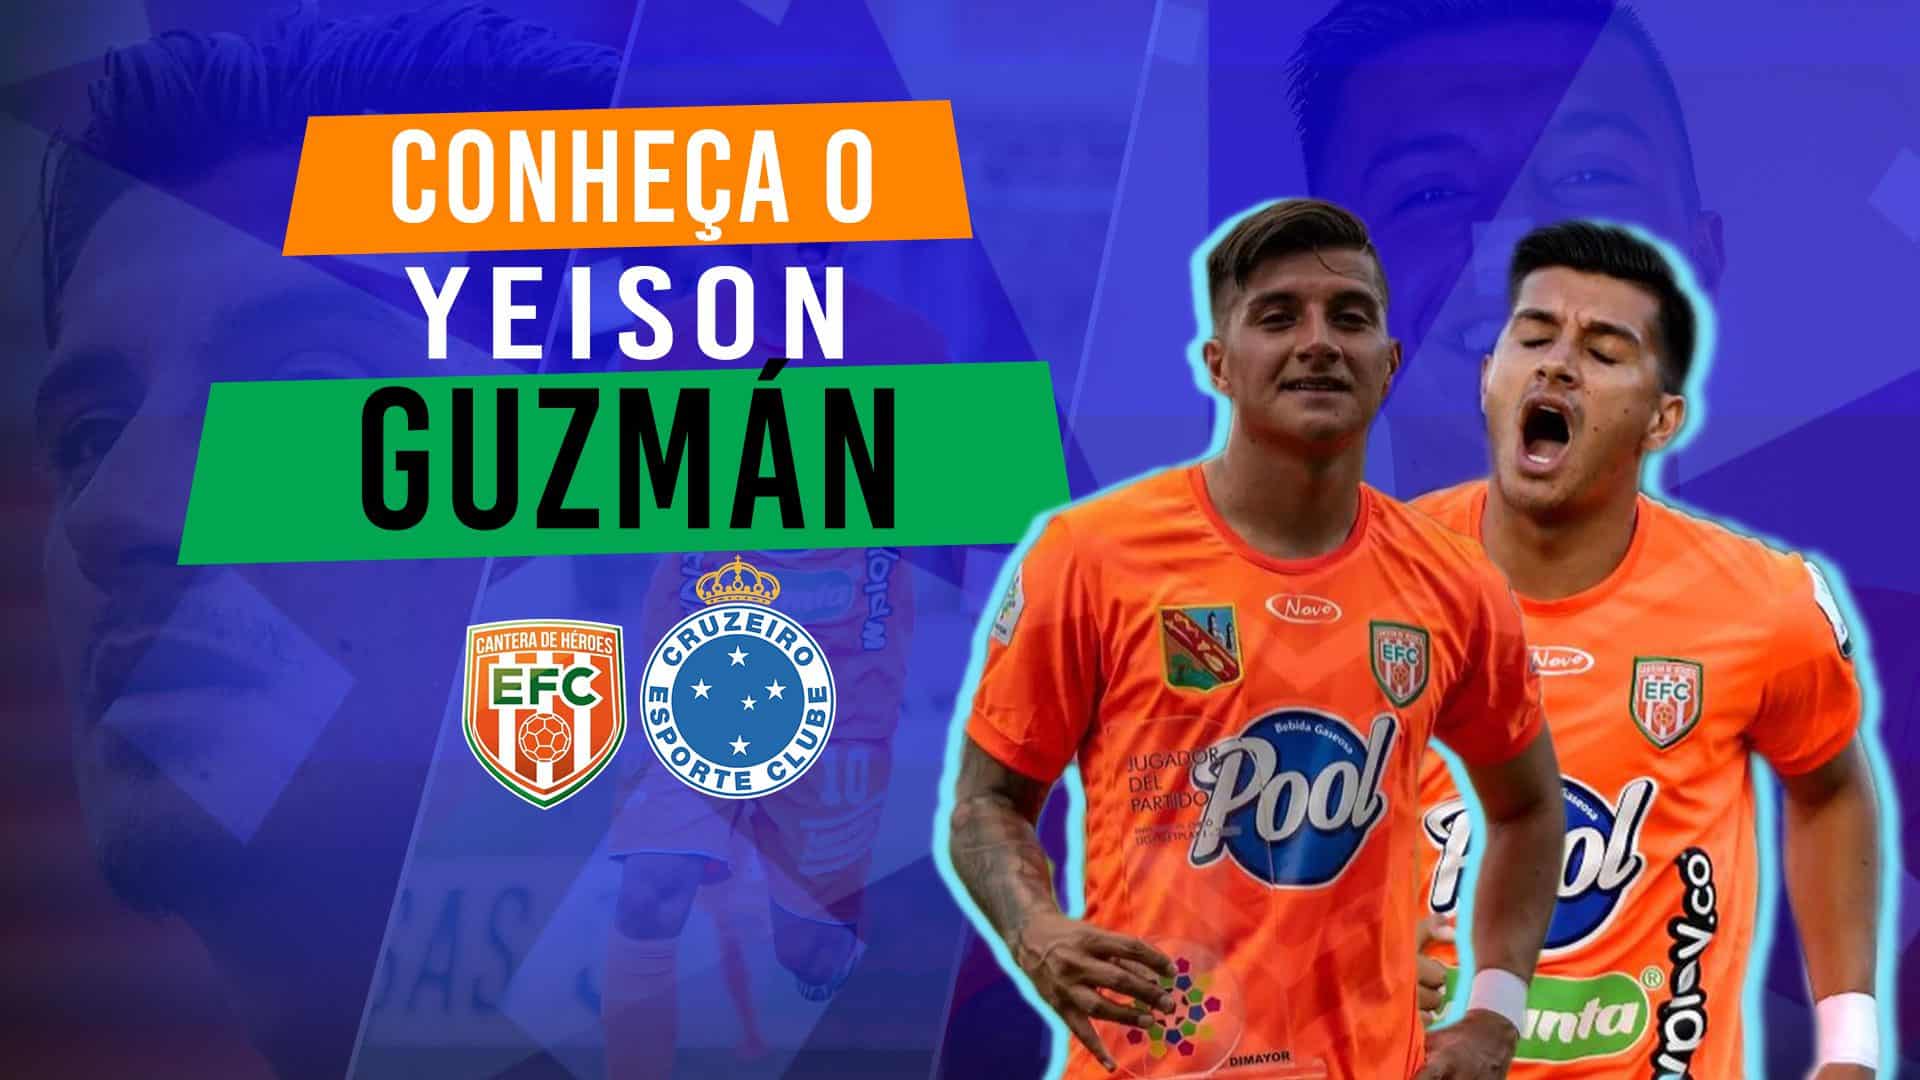 Yeison Guzmán